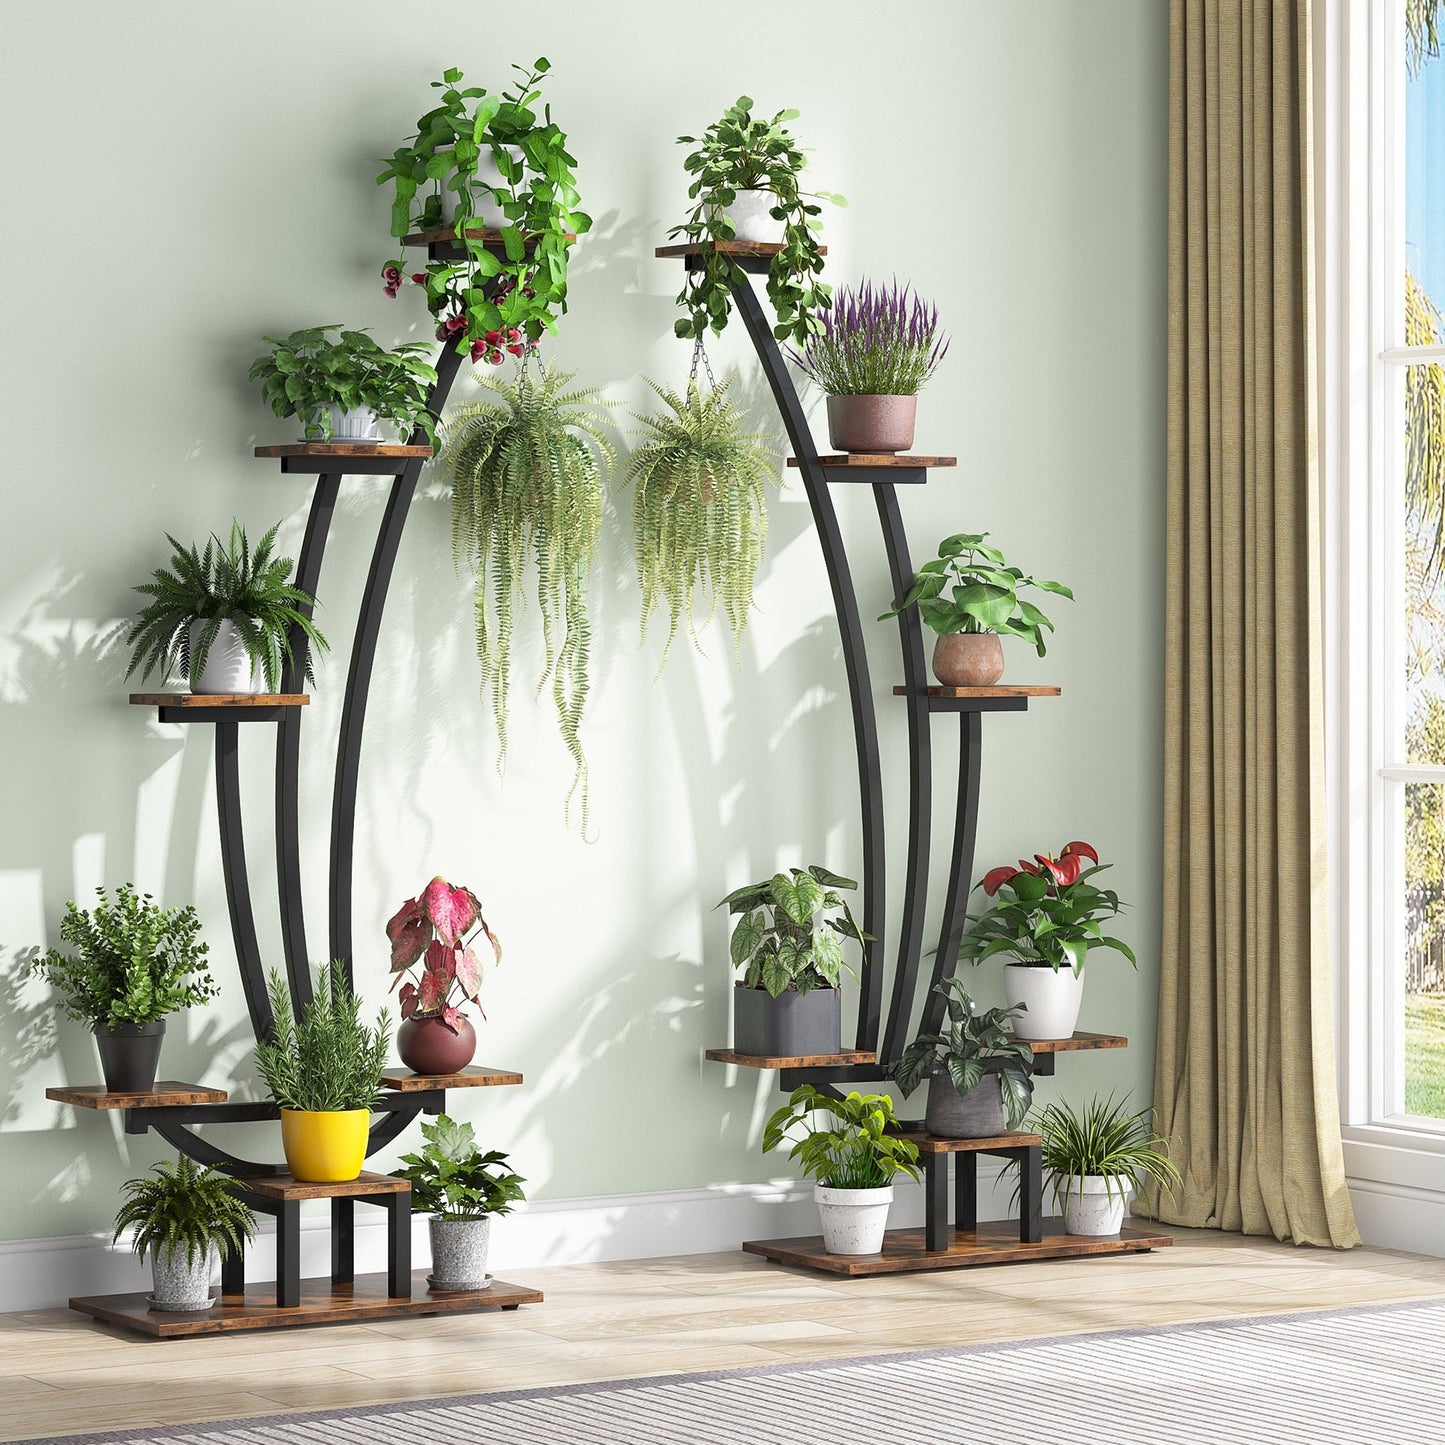 Tribesigns - Blumenständer, 2 Stück Pflanzenregal mit 6 Ebenen und 2 Haken, 150cm Hoch Pflanzenständer Blumenregal für Indoor Balkon Boden